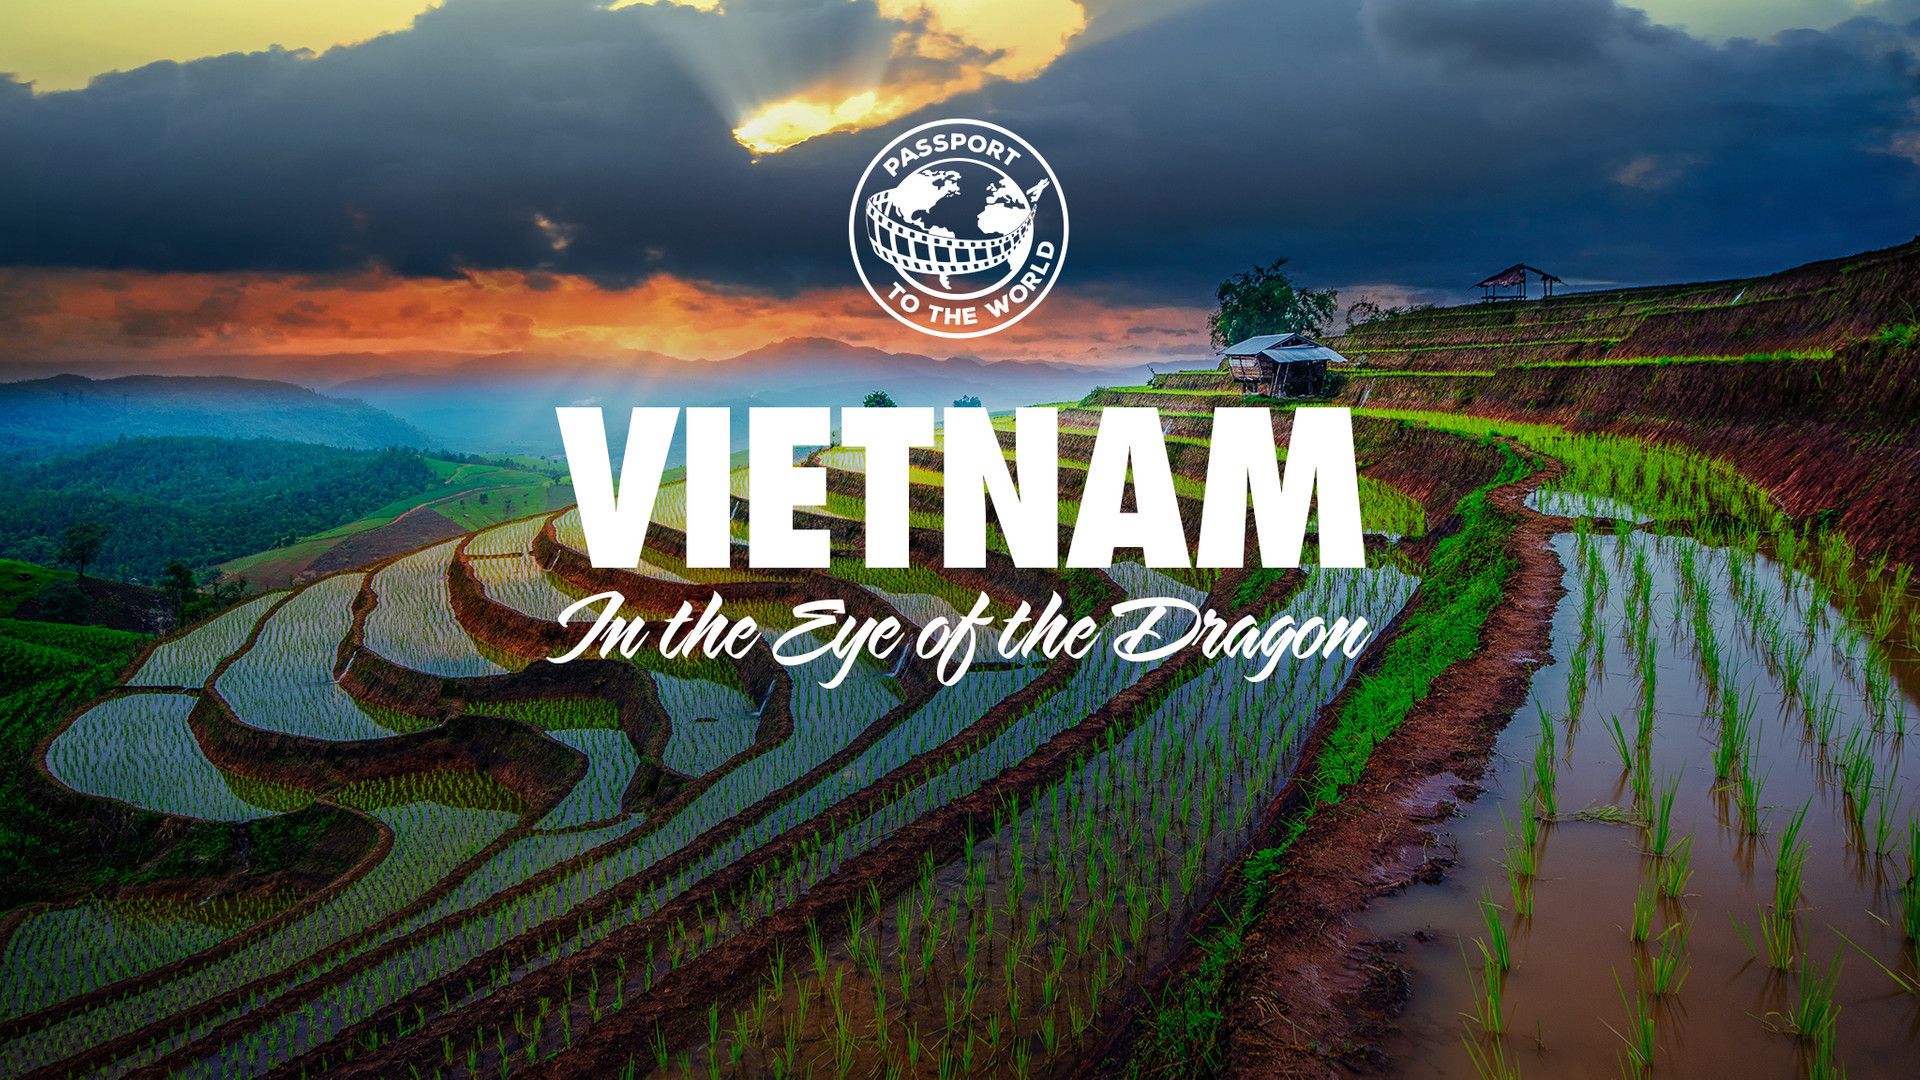 Passport To The World: Vietnam